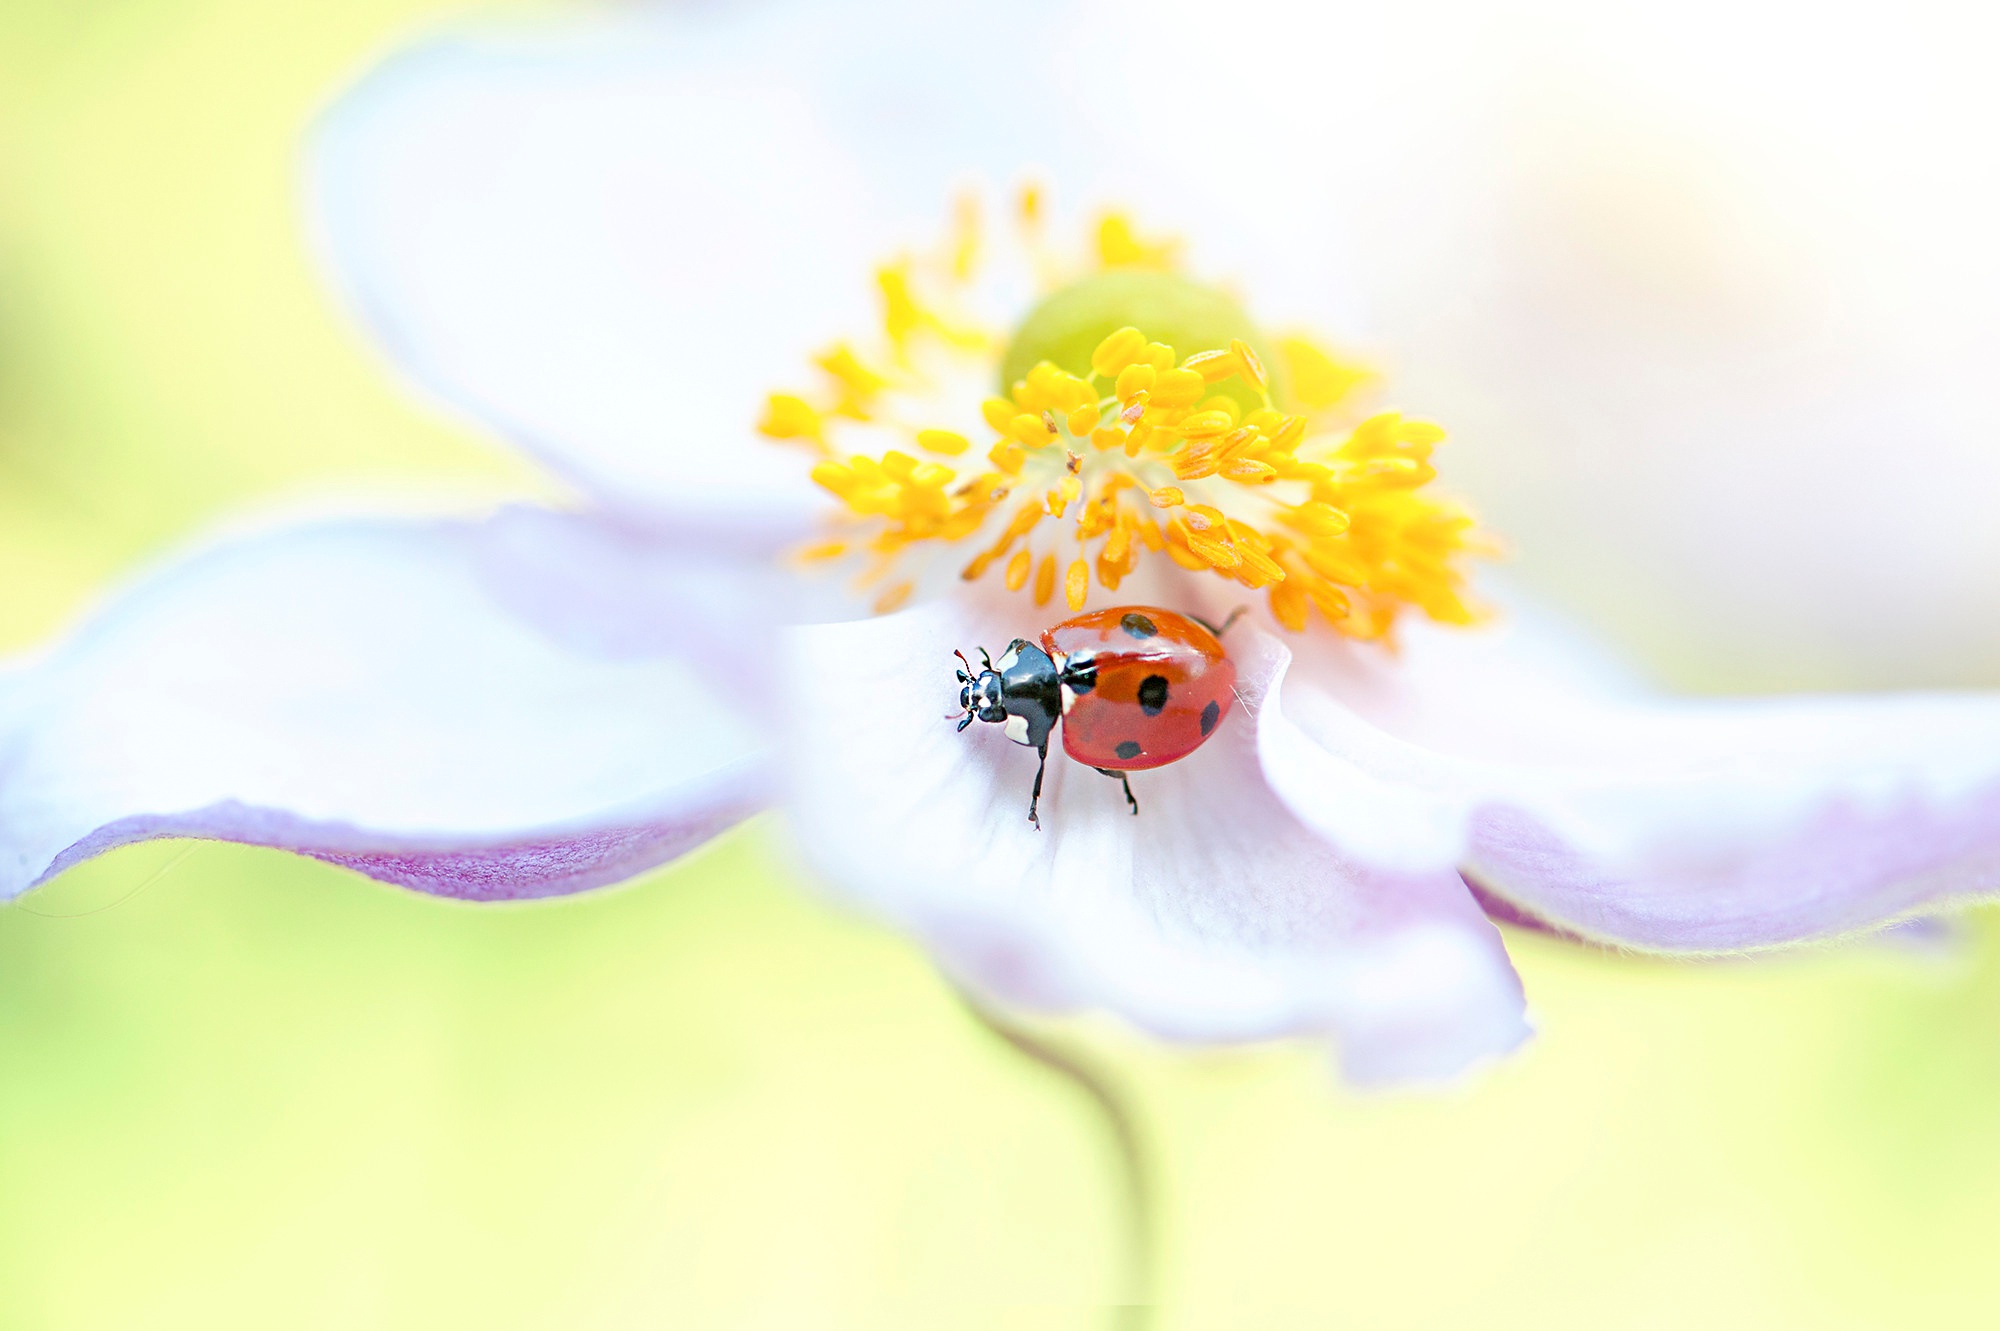 Flower Insect Ladybug Macro 2000x1331